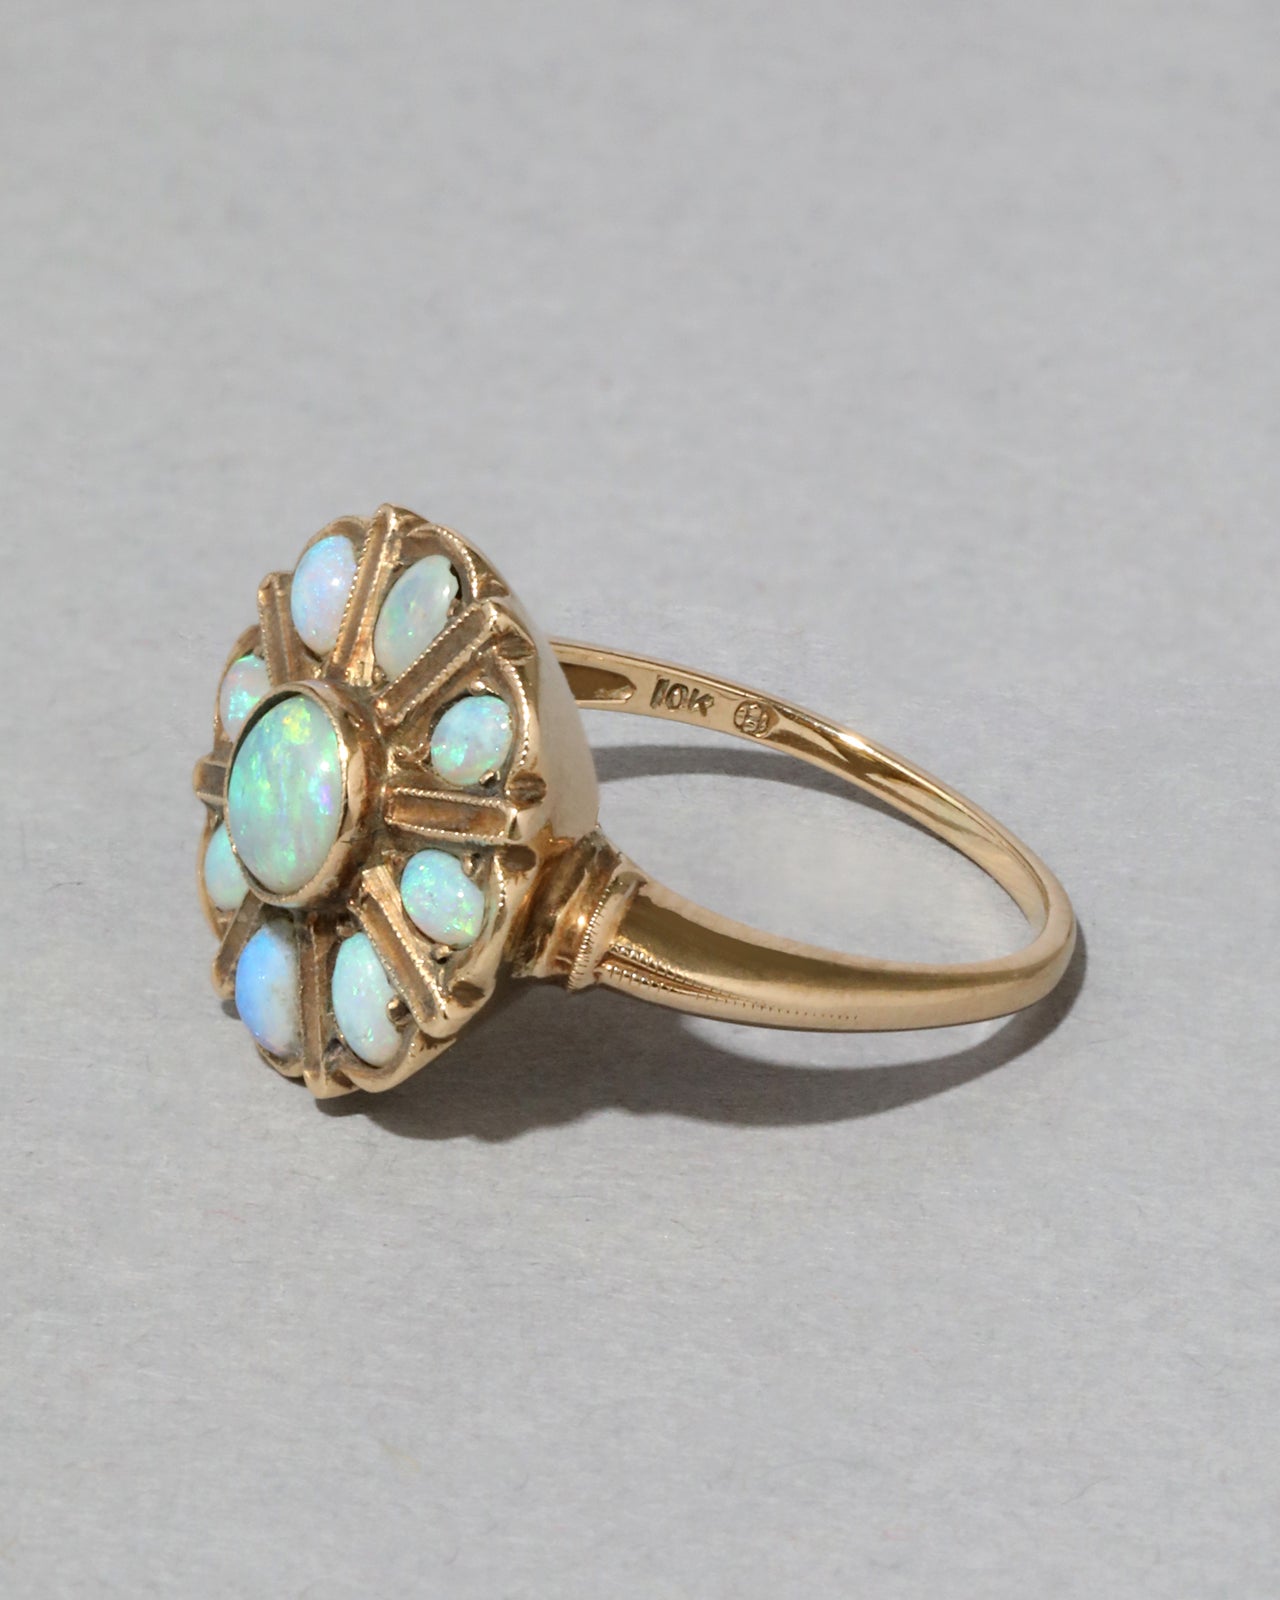 Antique 1800s 10k Gold Opal Floret Ring - Photo 2